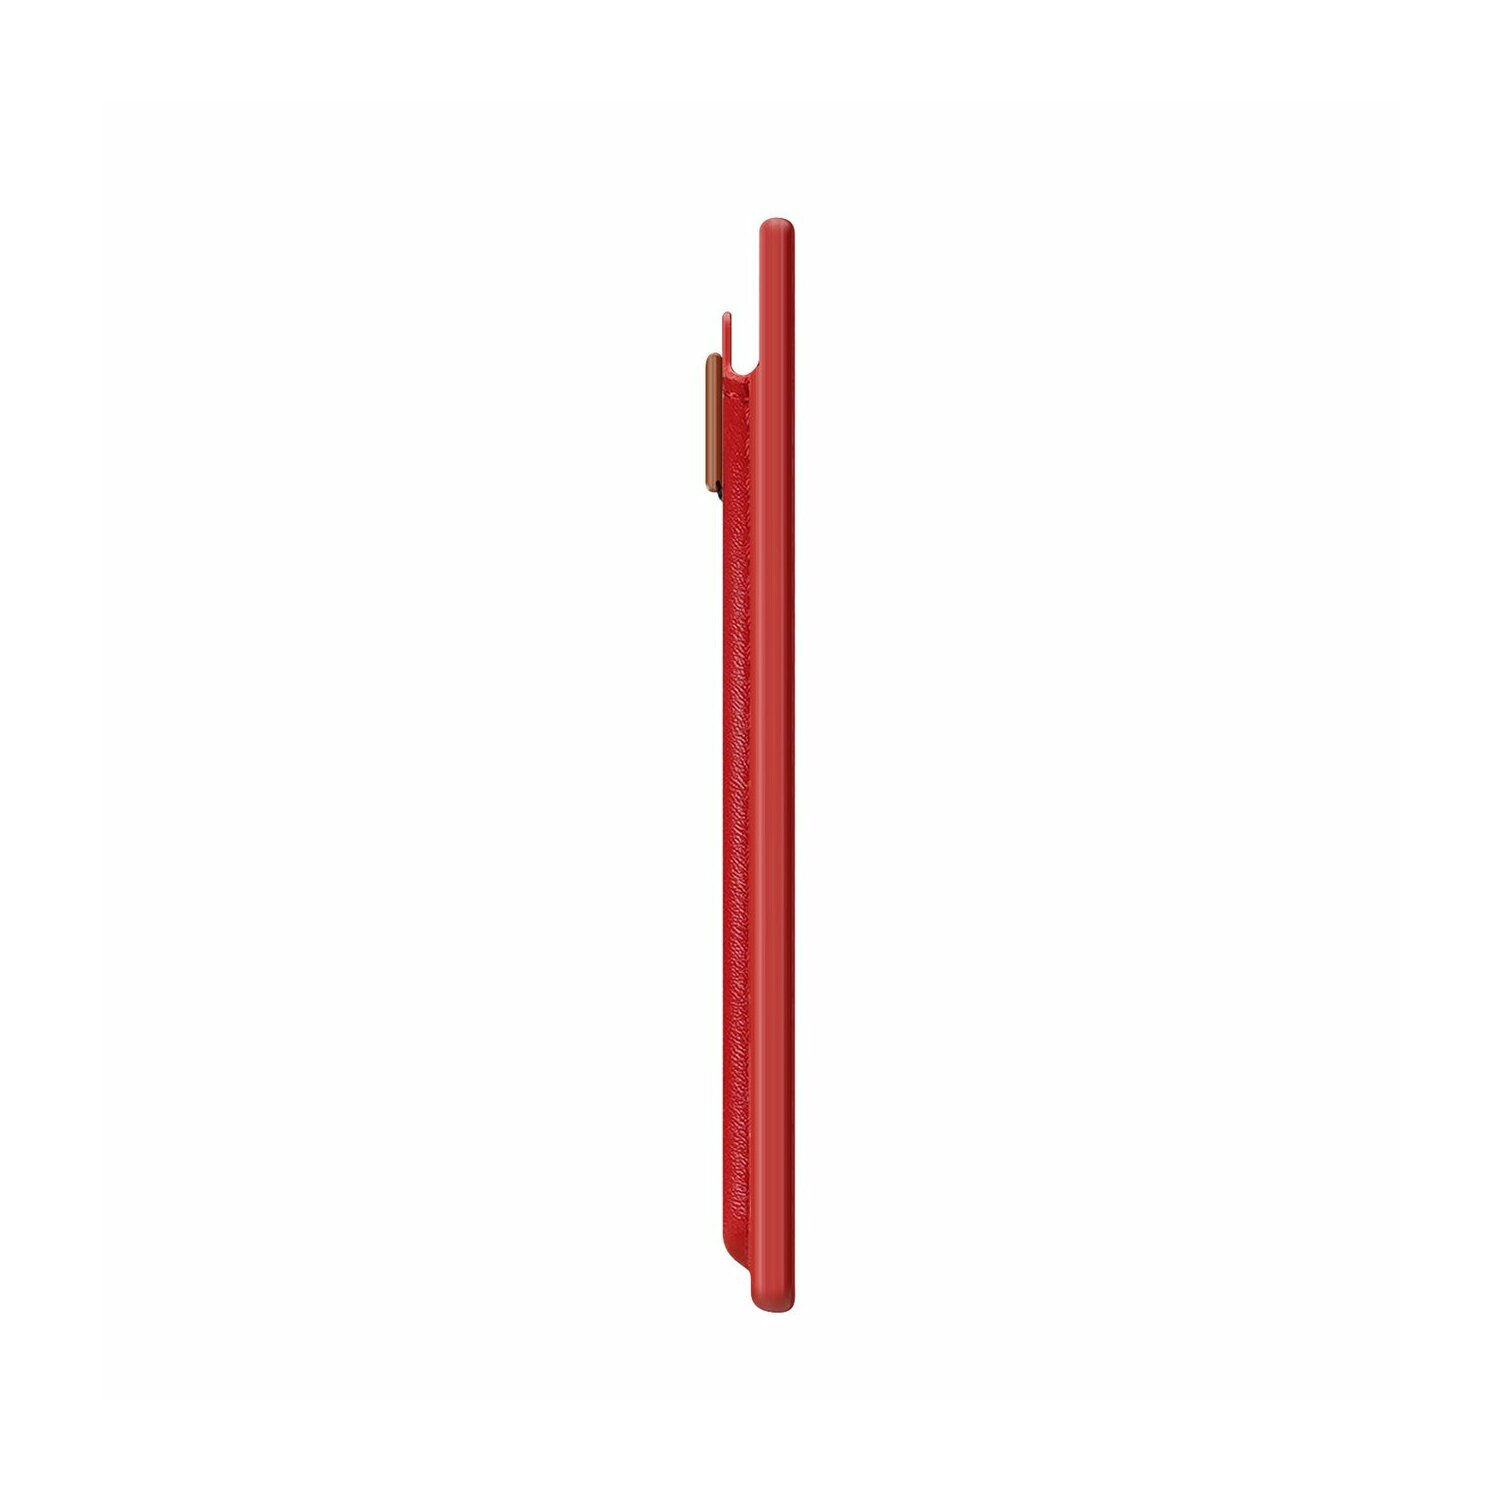 Rot, für iPhone DUX B-5148 MagSafe RFID-Blocker Geldbörse DUCIS Magnetische